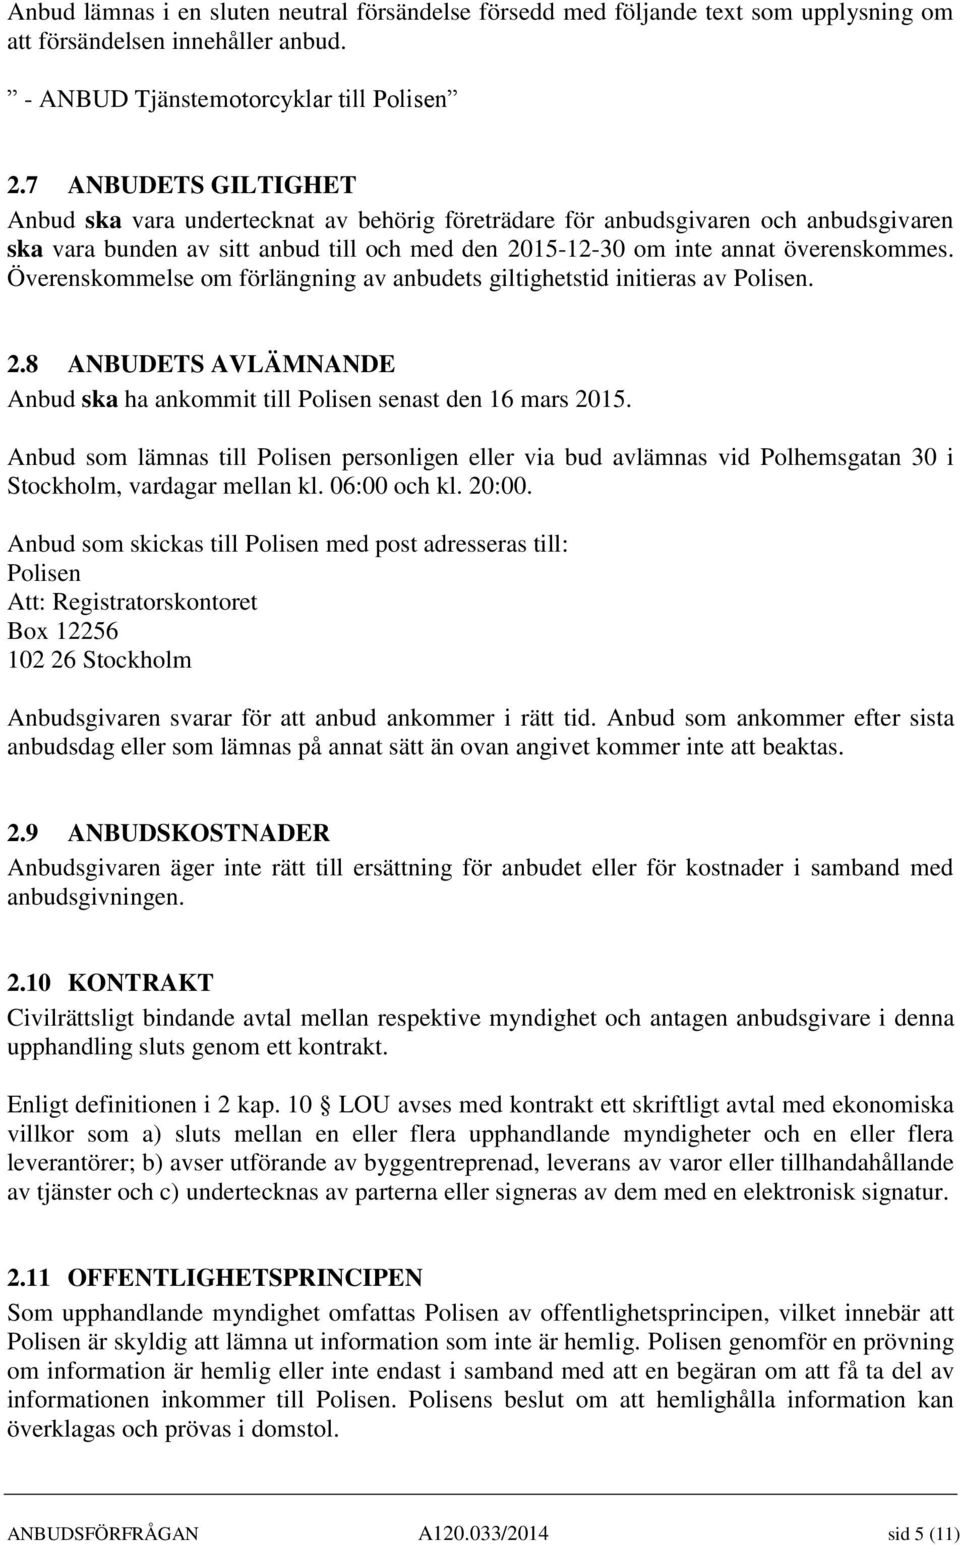 Överenskommelse om förlängning av anbudets giltighetstid initieras av Polisen. 2.8 ANBUDETS AVLÄMNANDE Anbud ska ha ankommit till Polisen senast den 16 mars 2015.